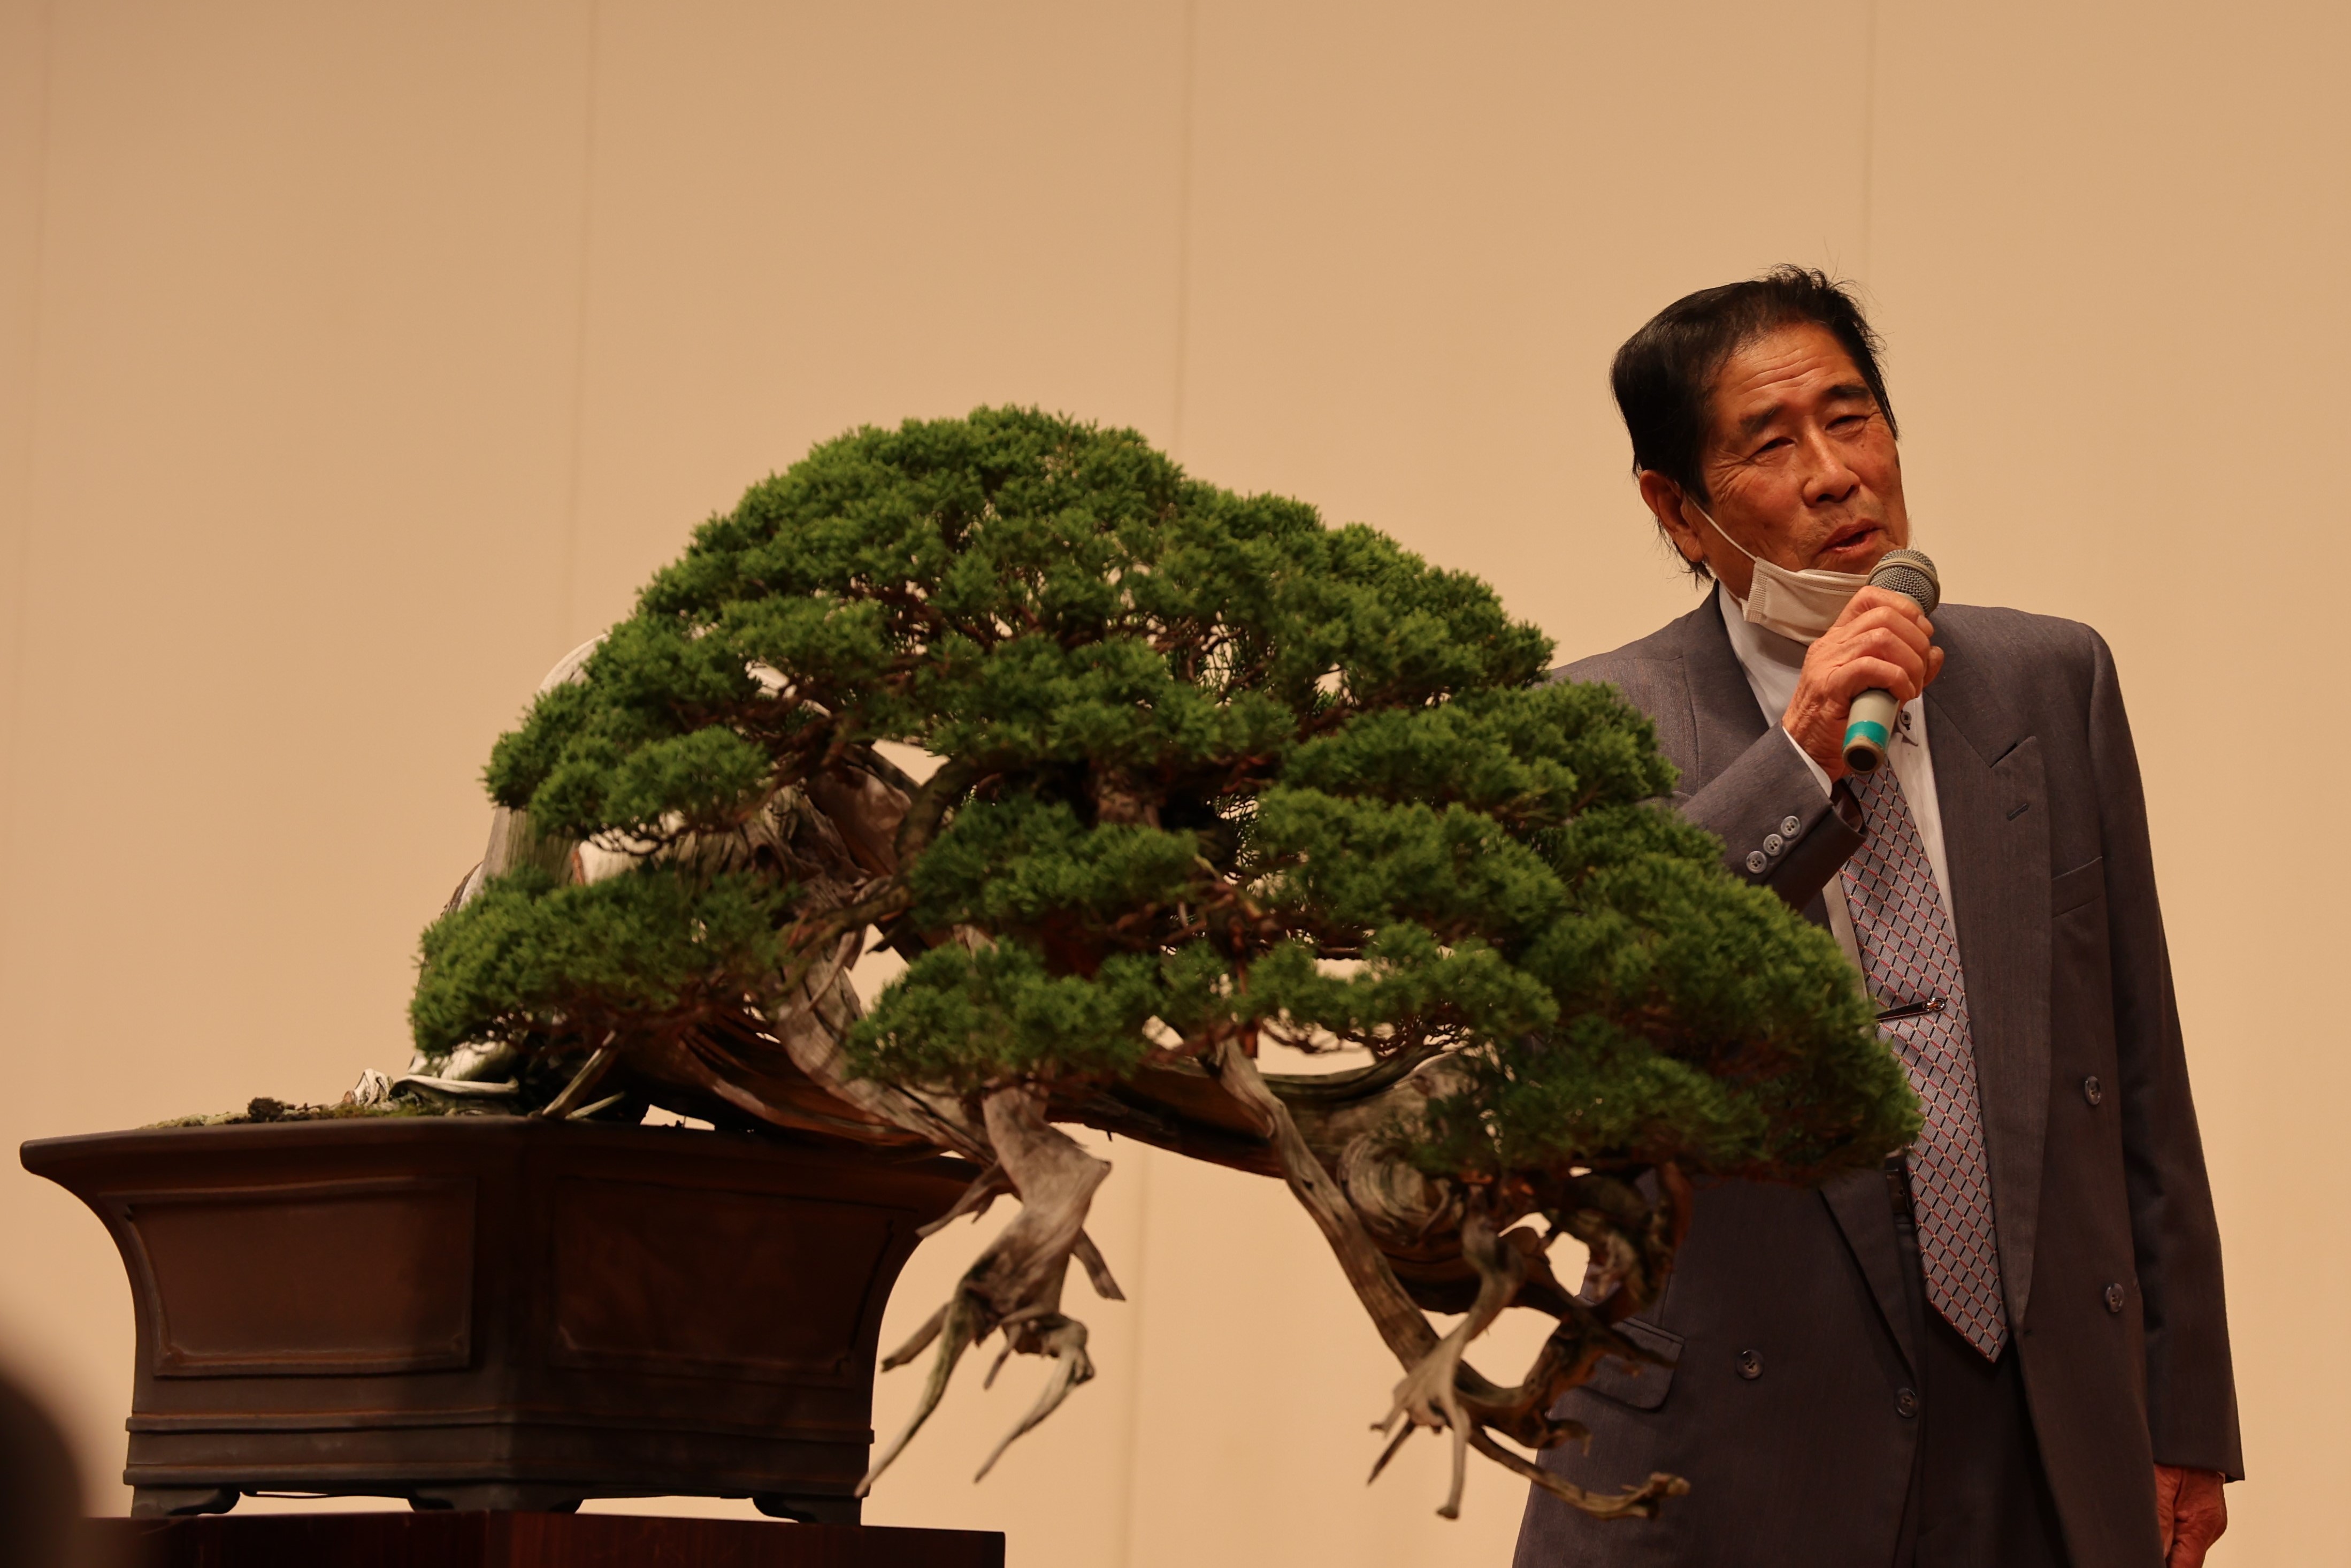 御自身作のステージ上に飾られた盆栽の説明をする木村正彦さん